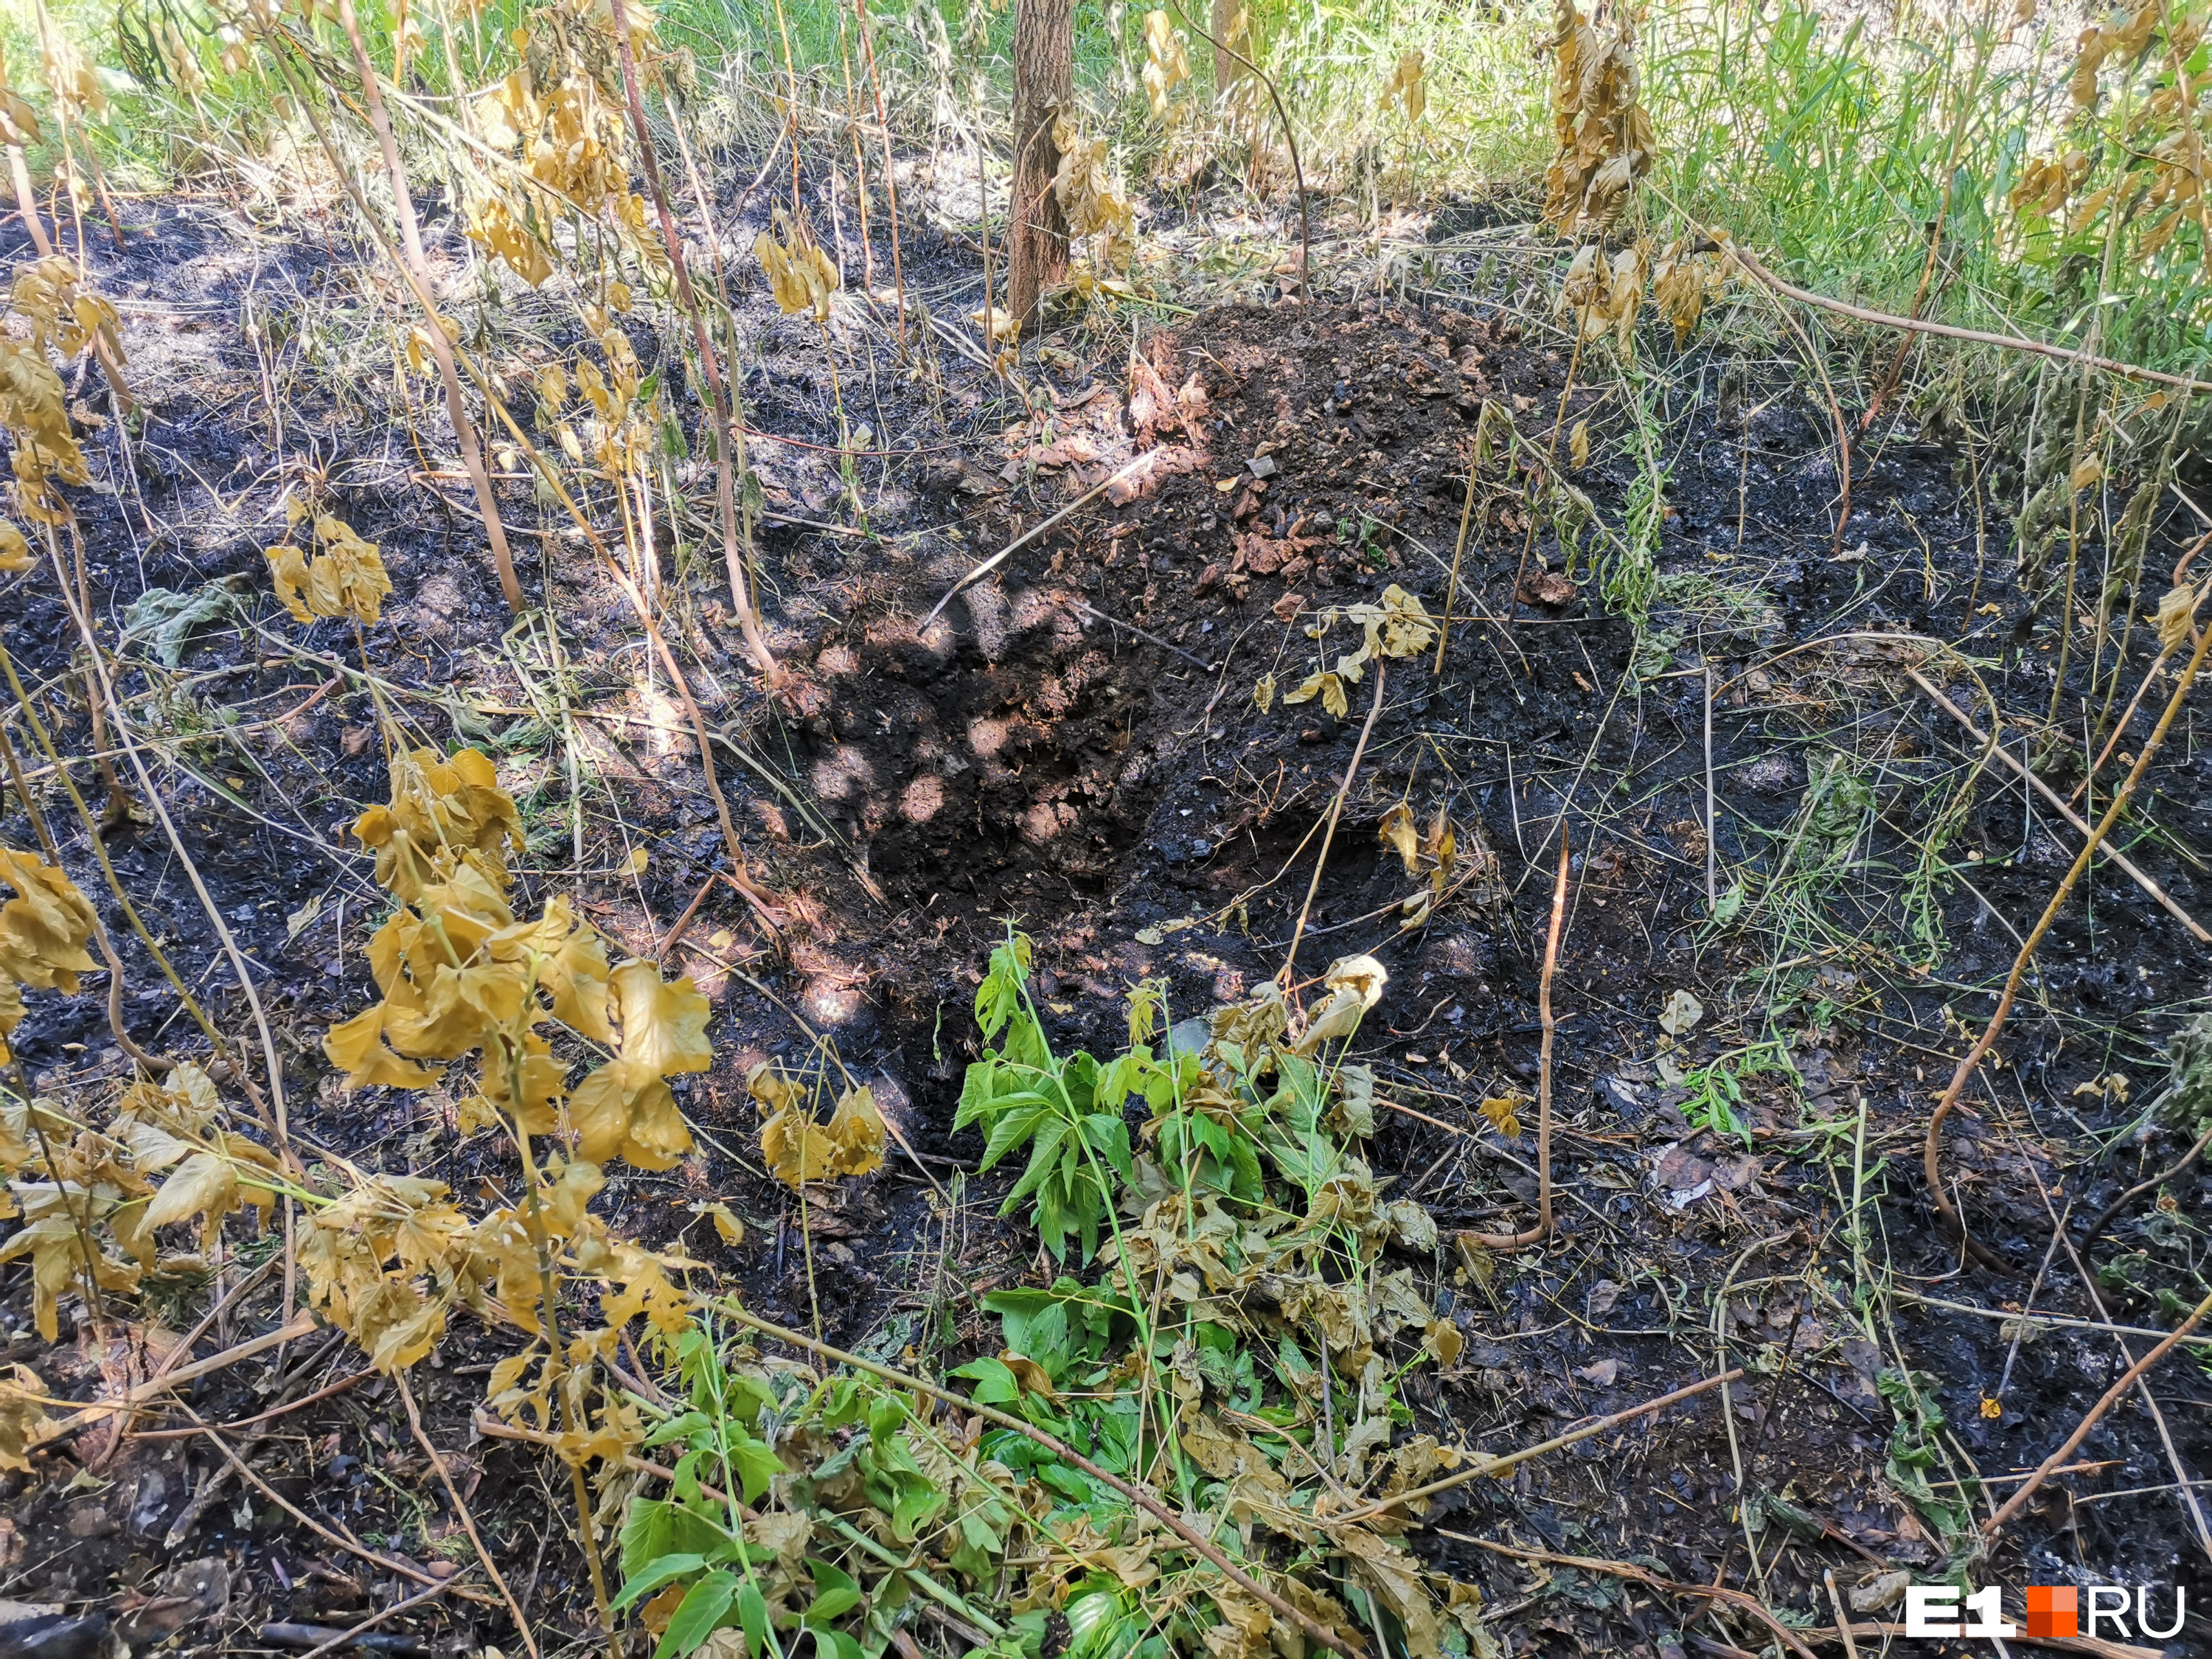 Неподалеку от места пожара на Полежаевой горела трава и кусты. Местные жители нашли под землей кусок тлеющего грунта. Они считают, что брикет могли заложить поджигатели. Но, возможно, это просто торф